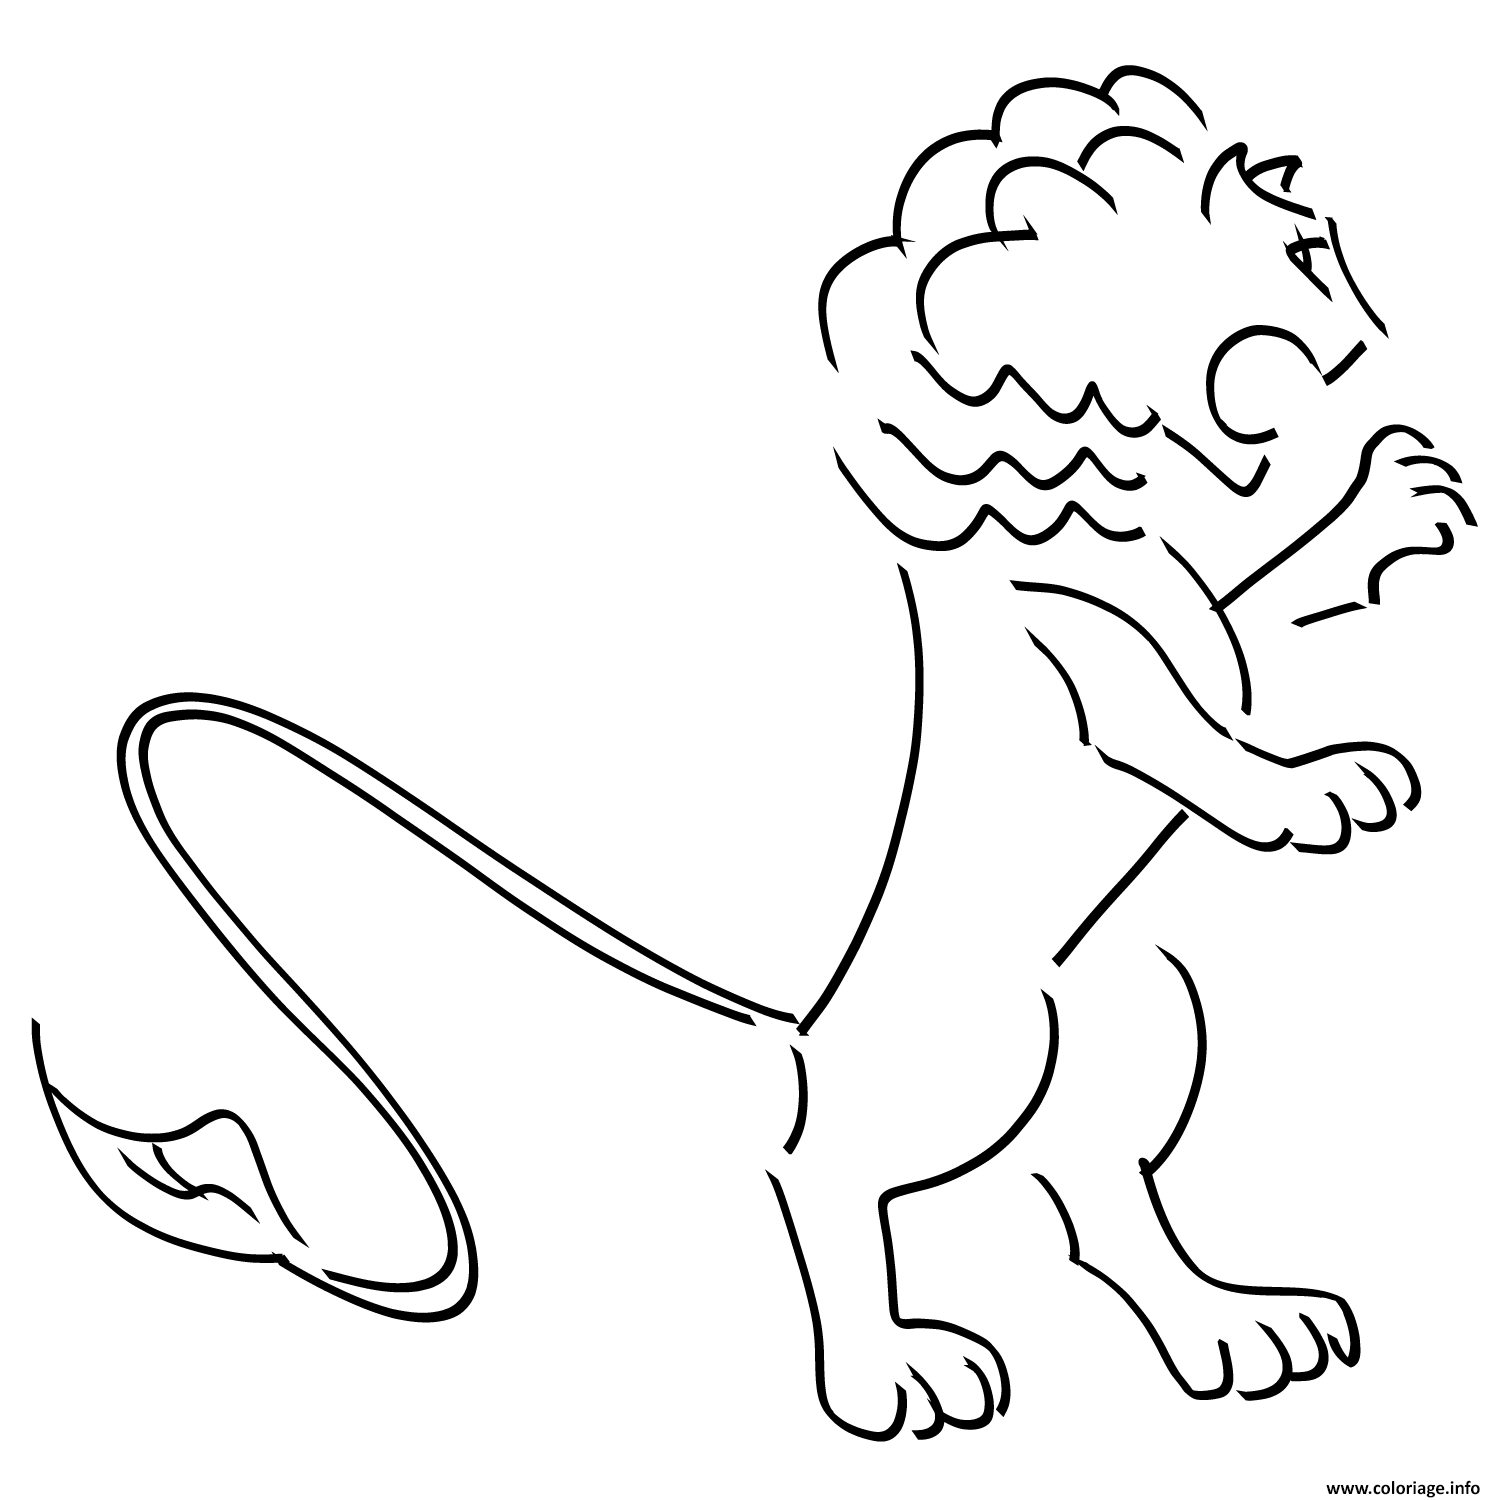 Dessin lion frustre logo Coloriage Gratuit à Imprimer